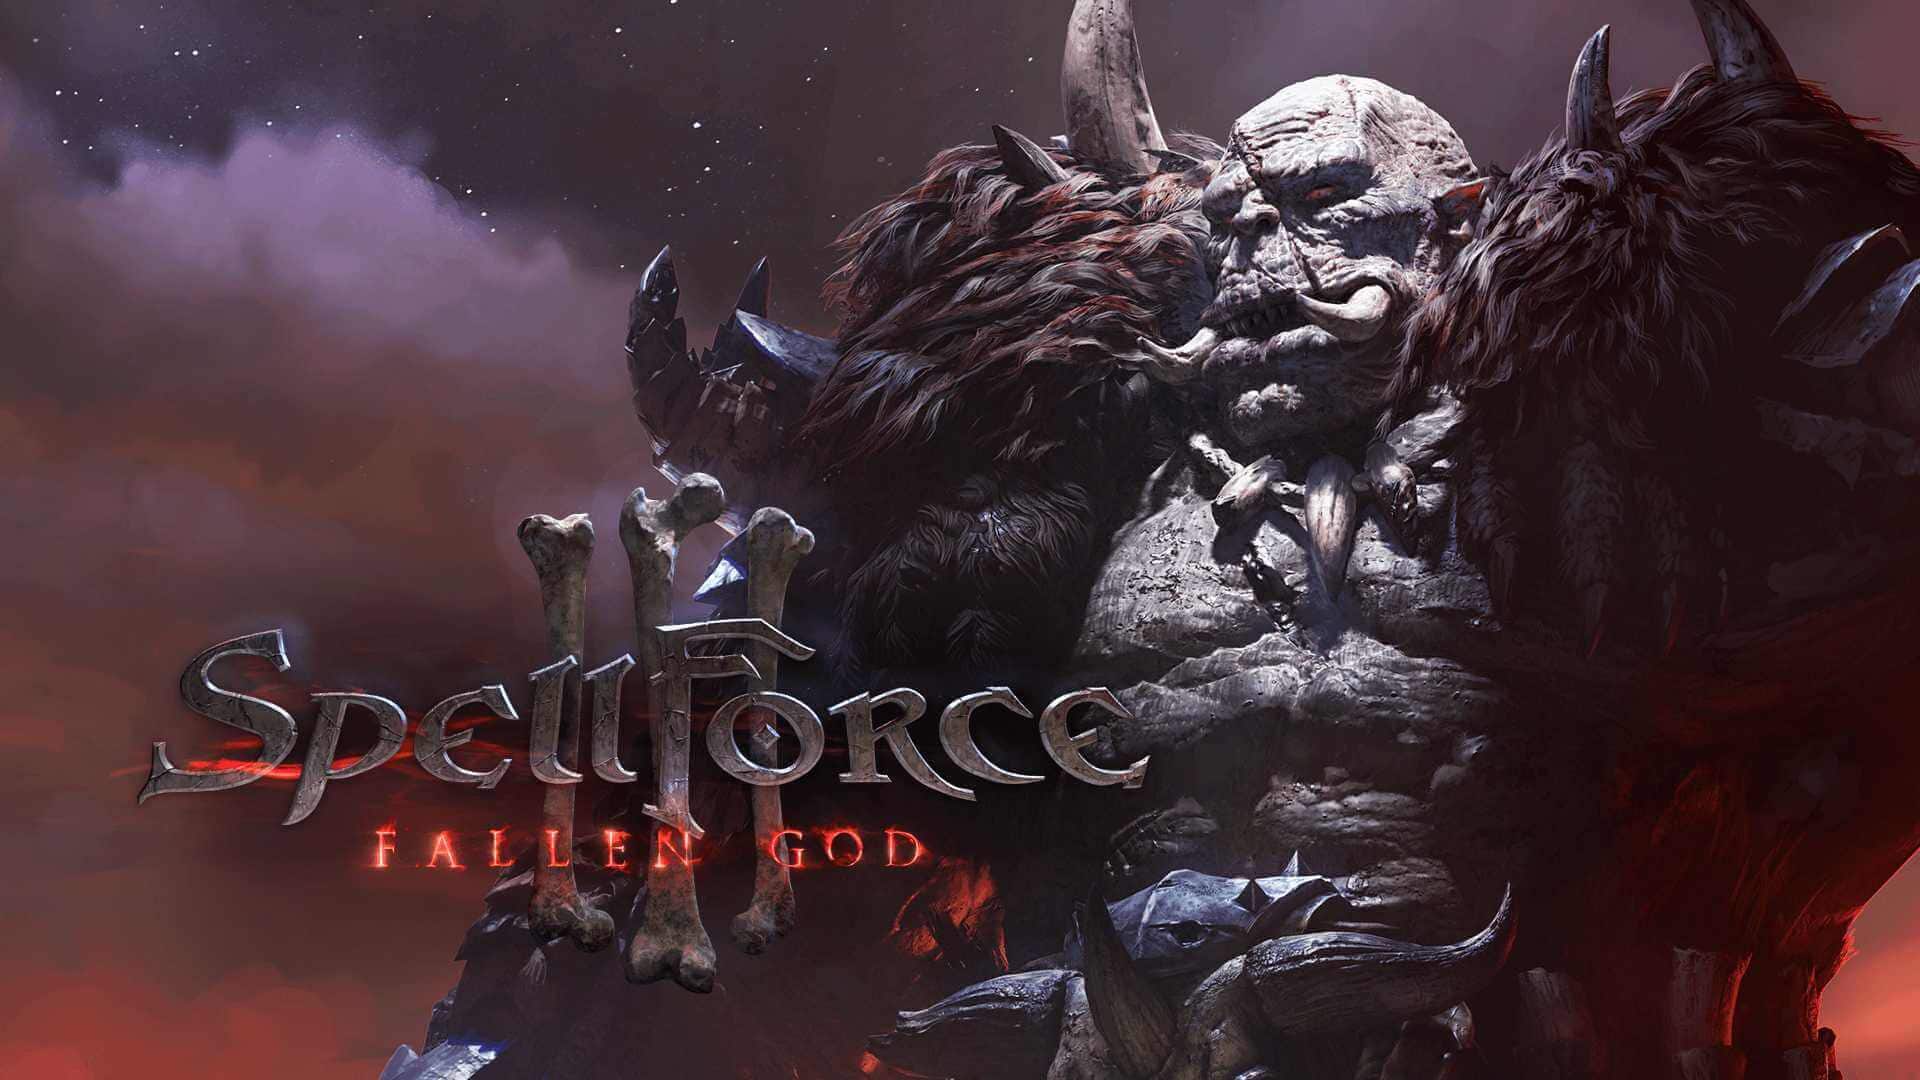 SpellForce 3 Fallen God Wallpapers